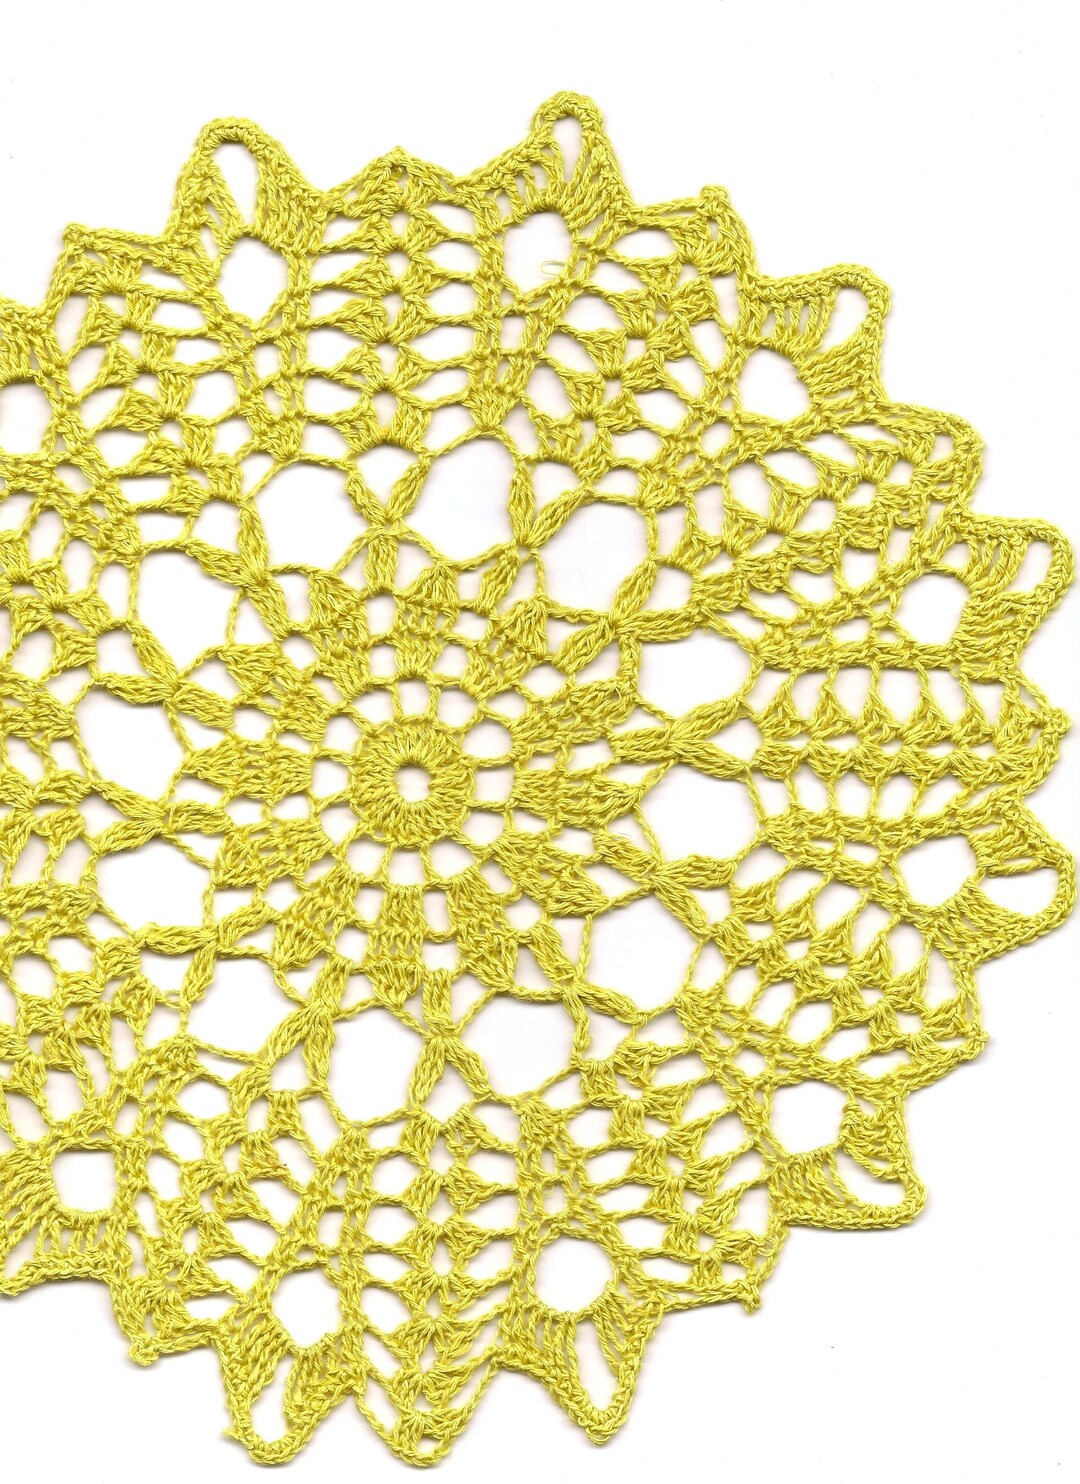 Crochet Doily Home Decor Lace Doilies Table Decoration - Etsy UK